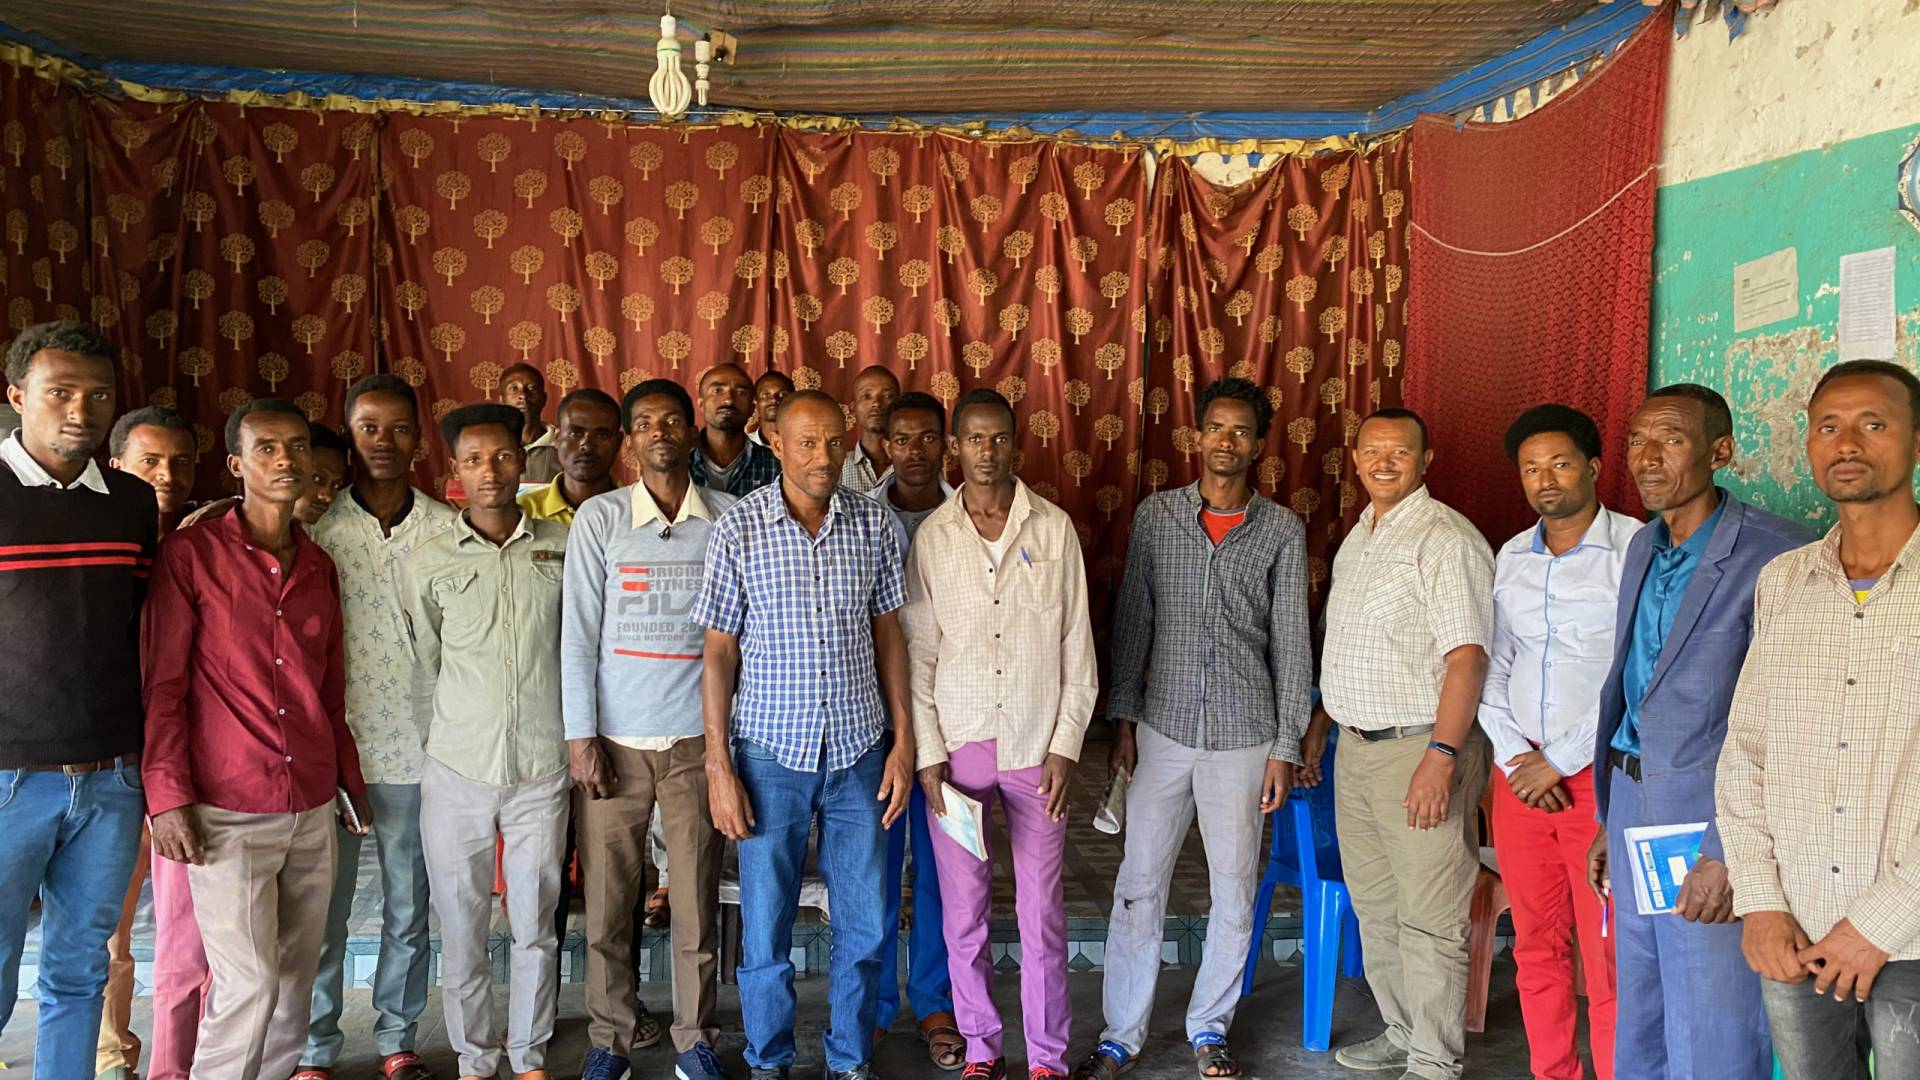 Ethopian Pastors